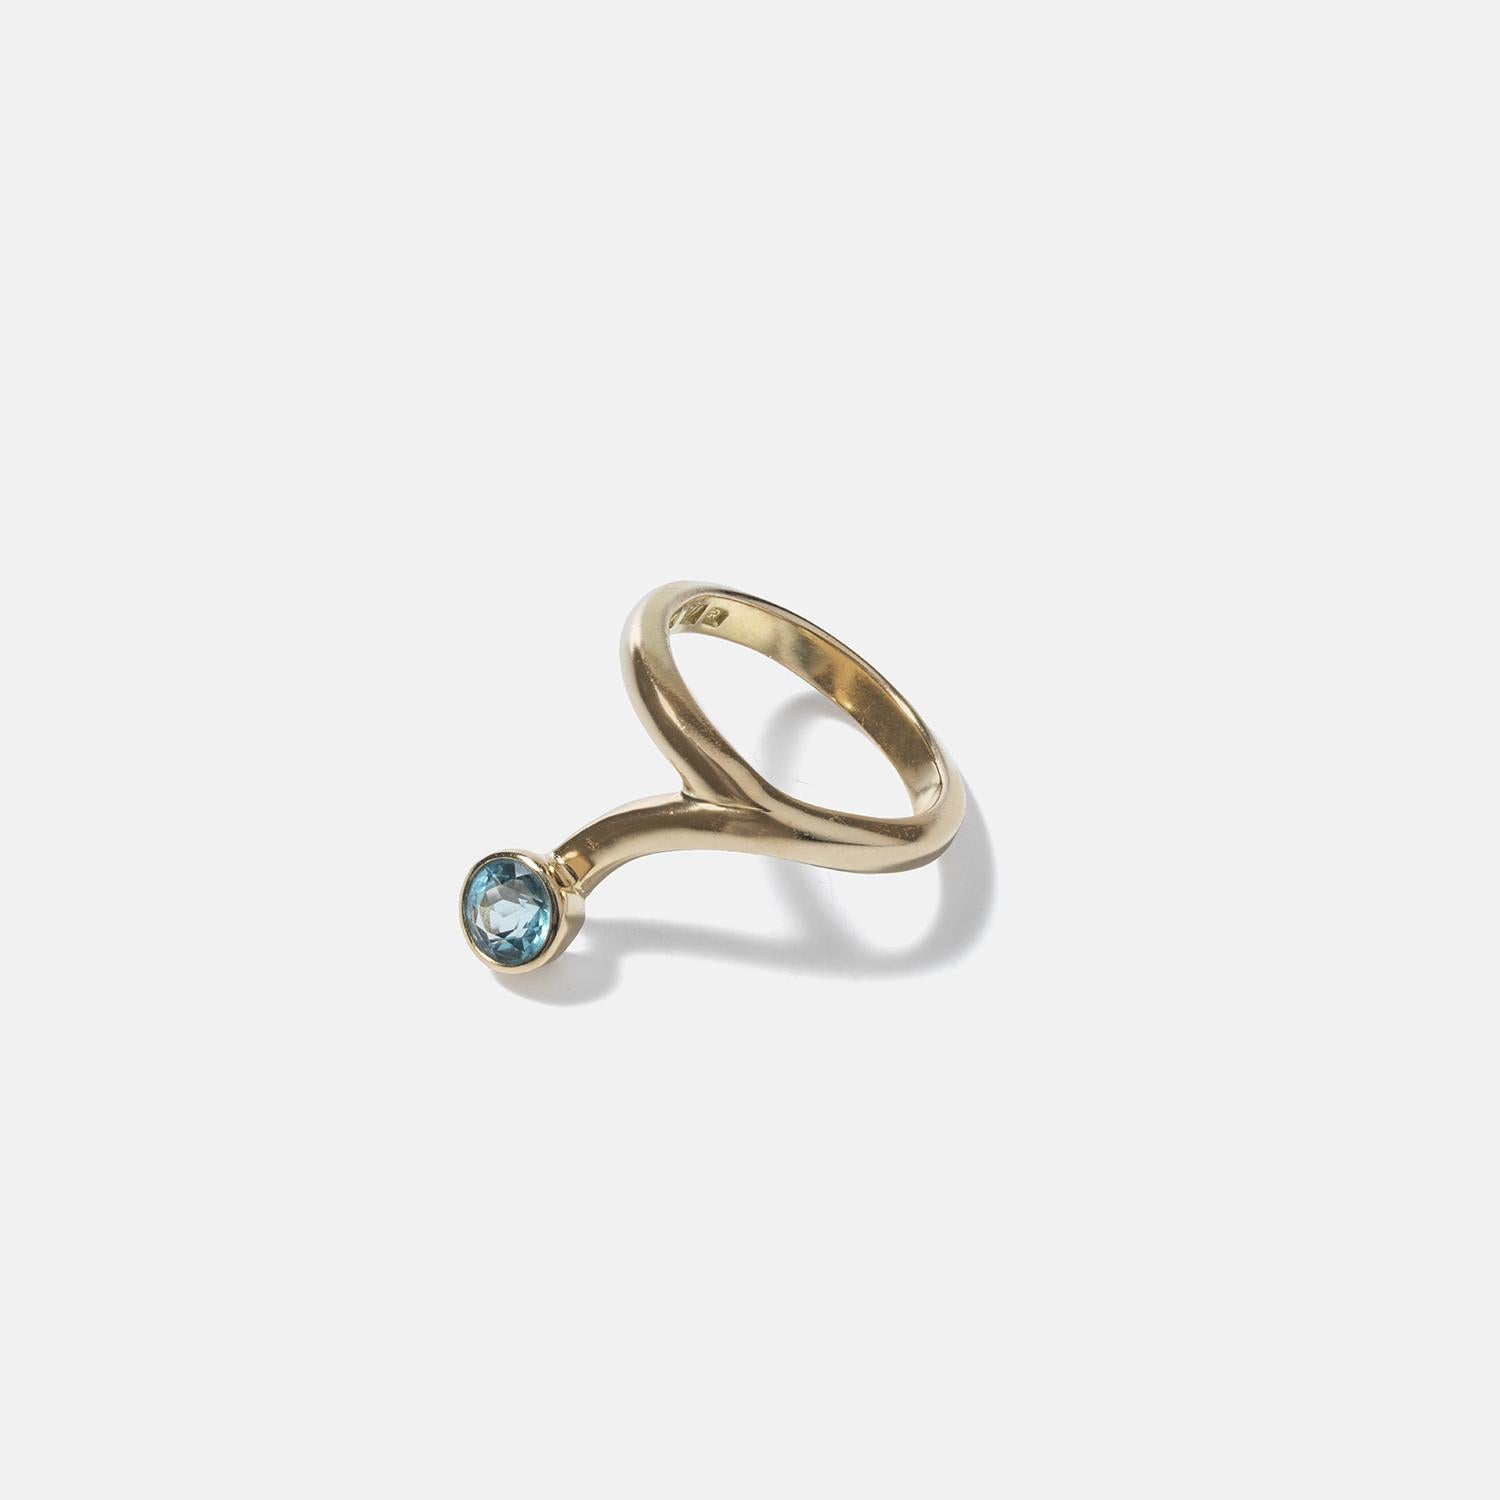 In diesen Ring aus 18-karätigem Gold ist am Ende ein runder Türkisstein eingelassen, der einen lebhaften Kontrast zum Gold bildet. Das Band windet sich schlangenförmig um den Finger und verleiht ihm einen exotischen und orientalischen Touch. Das